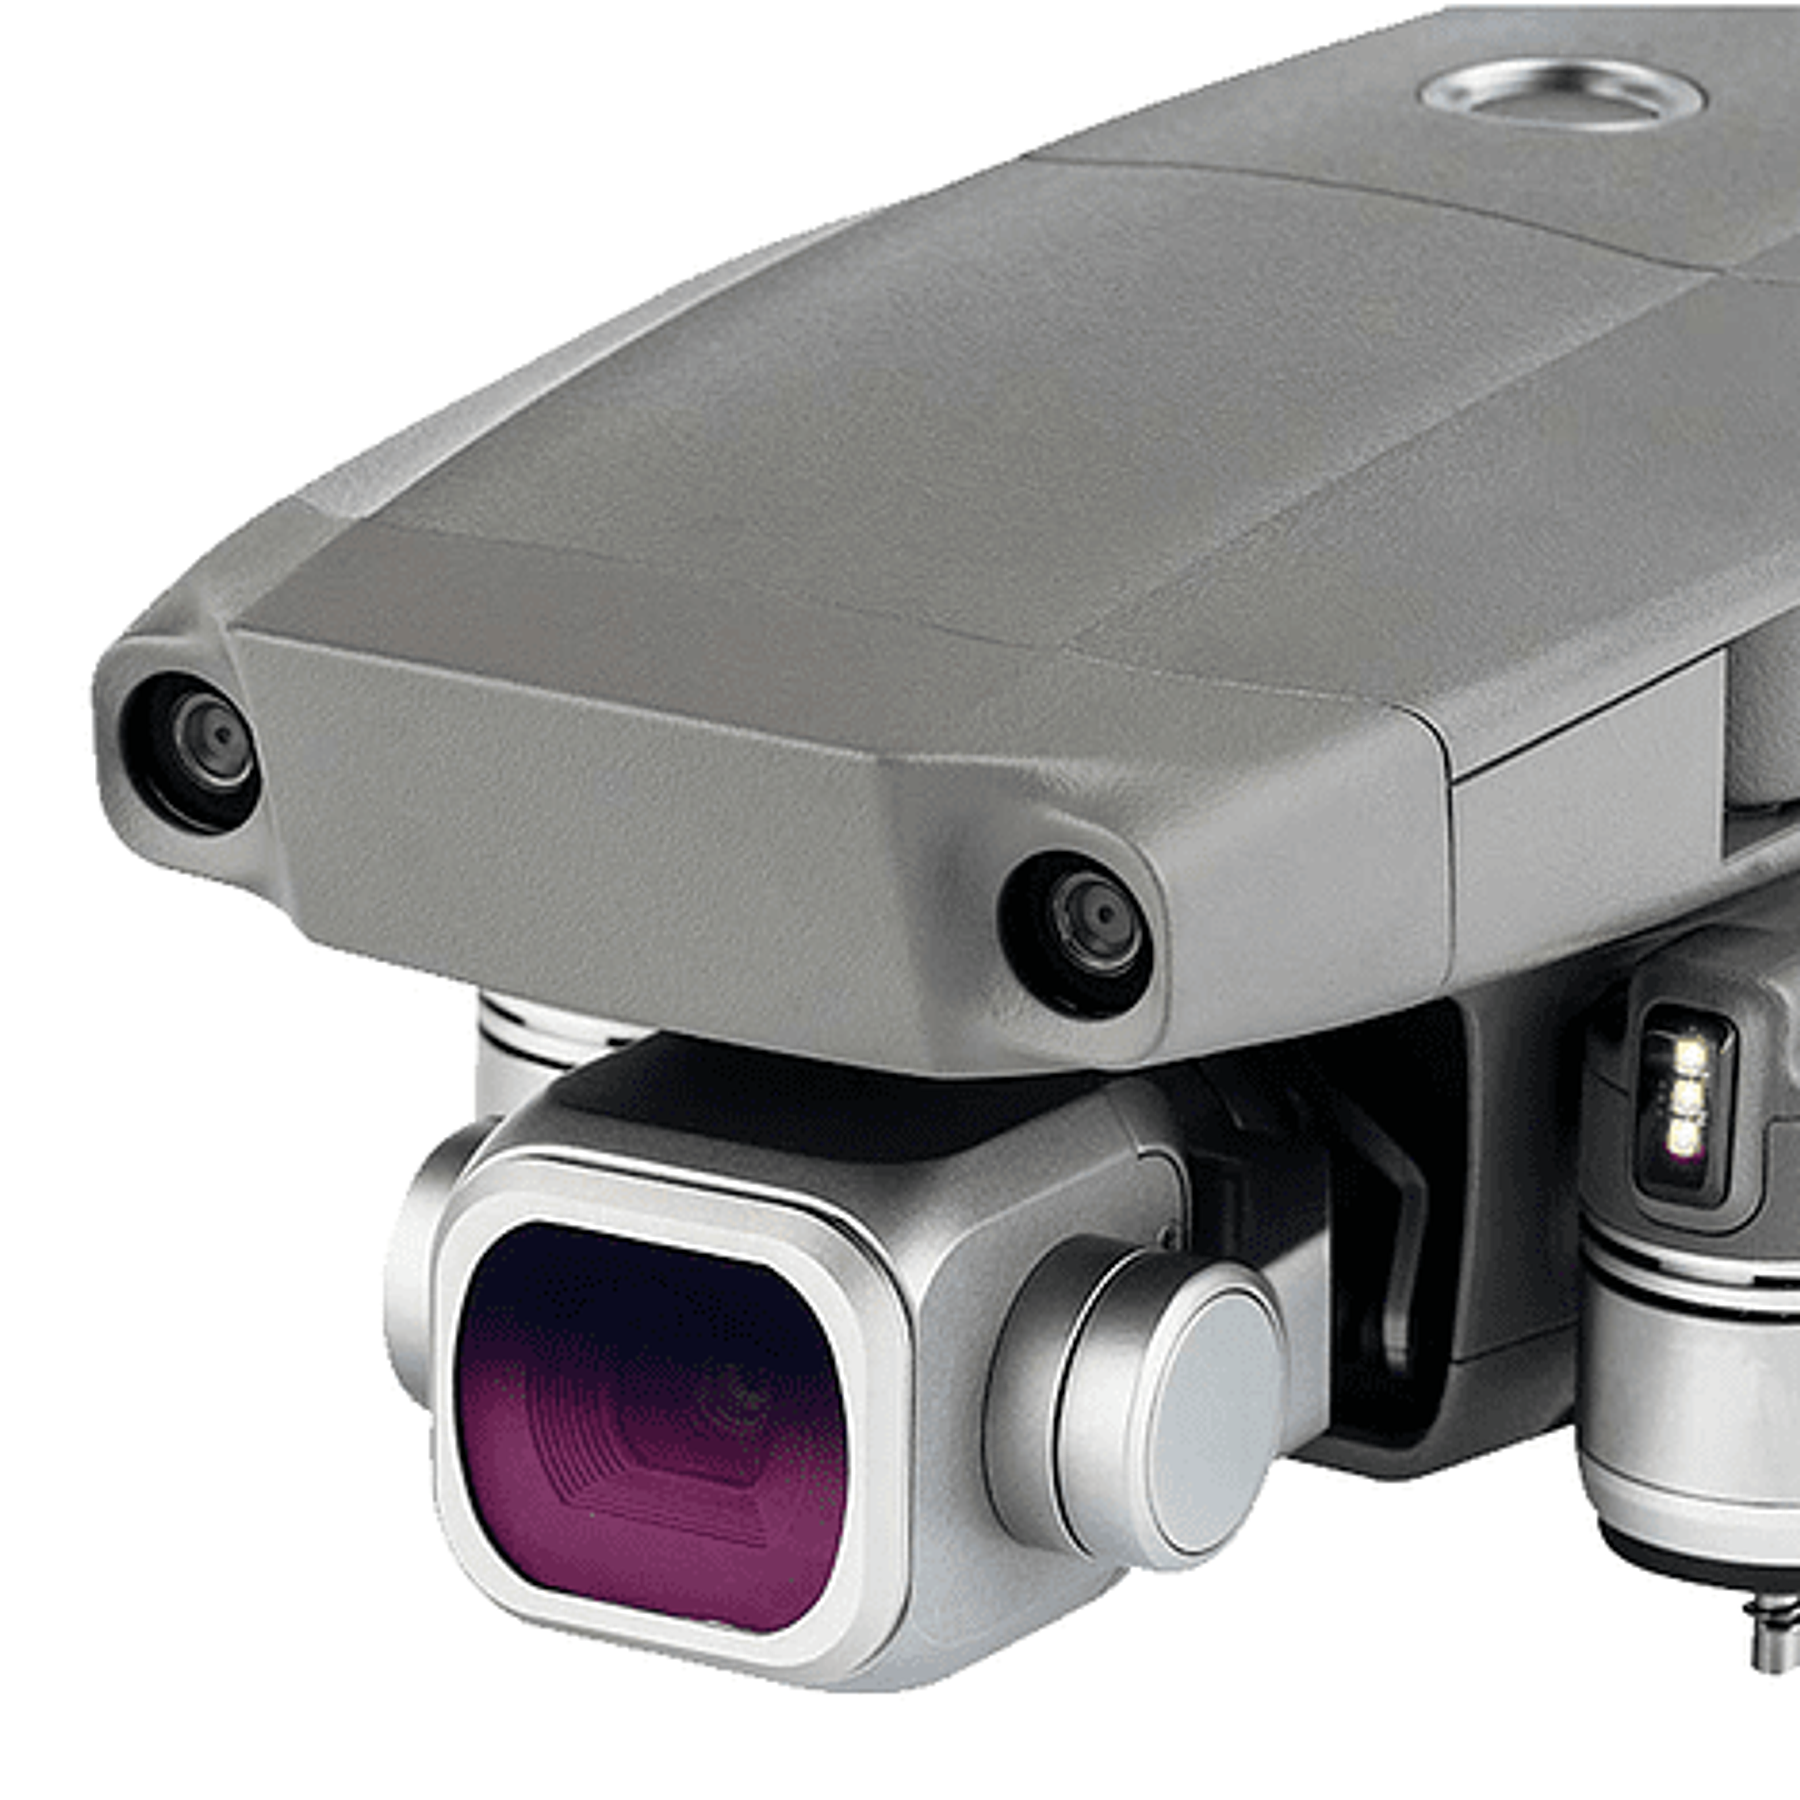 Filtro NiSi para Drone DJI Mavic 2 Pro ND32 (5 Pasos) + Polarizador